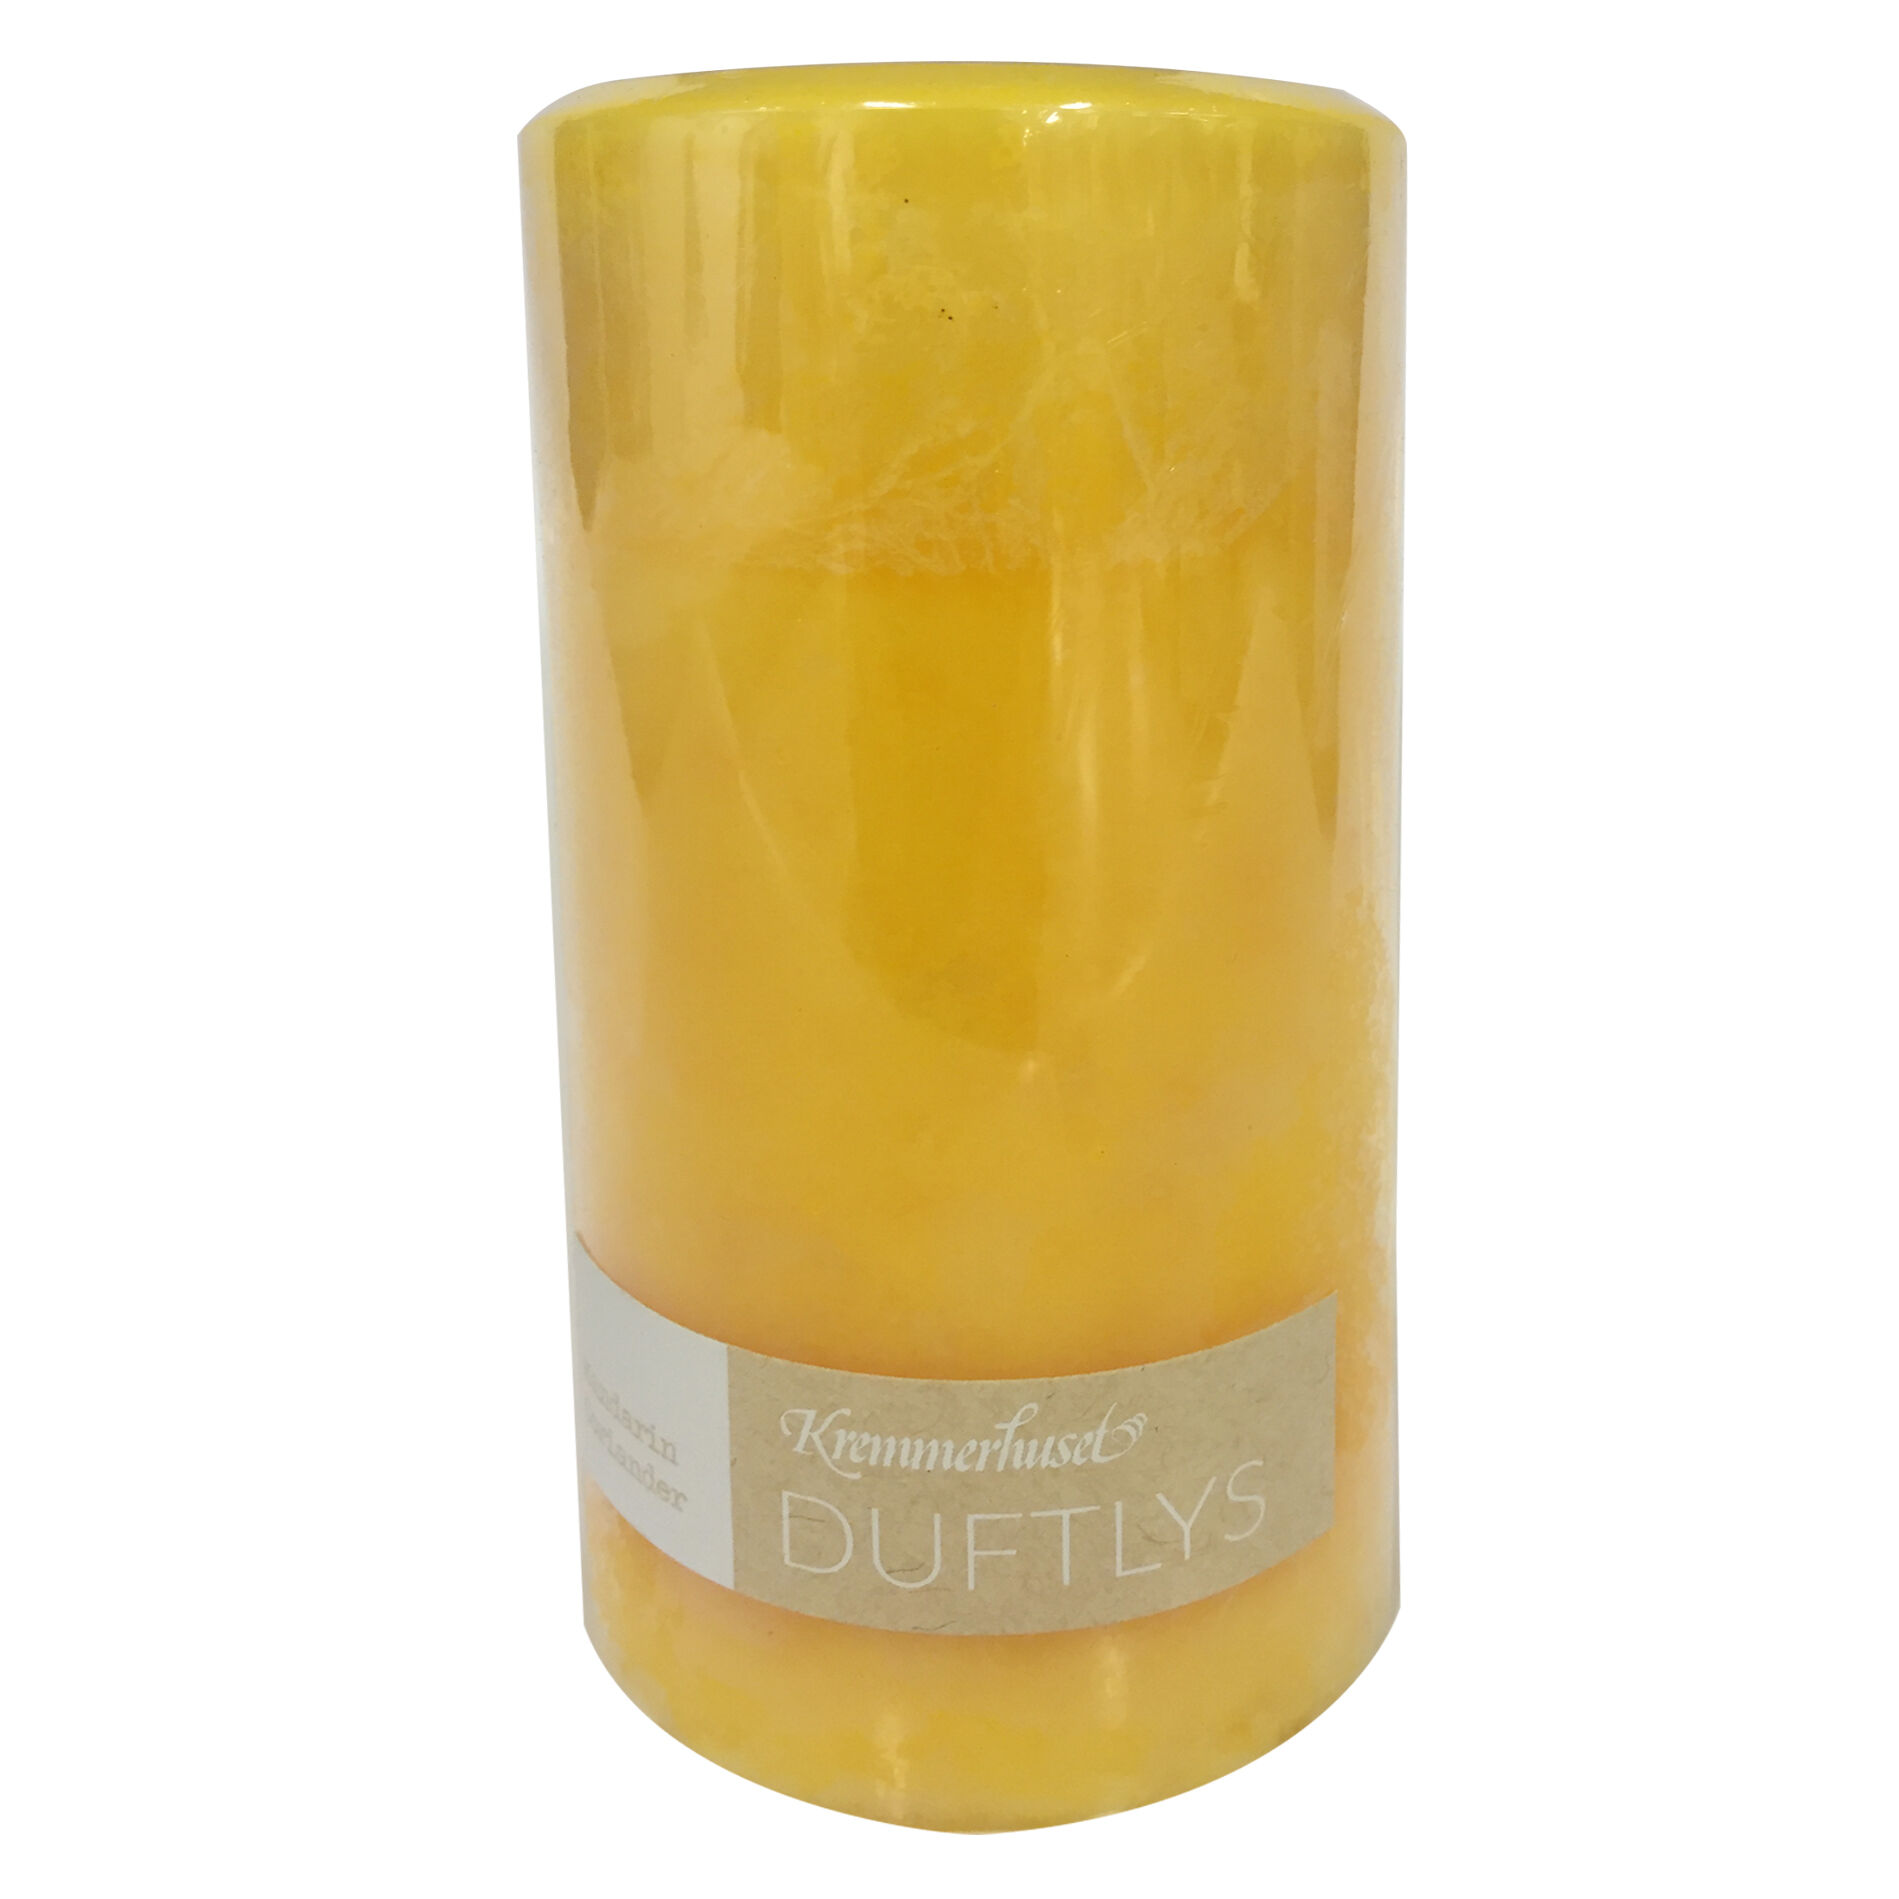 Standard produsent Duftlys mandarin & koriander 15cm